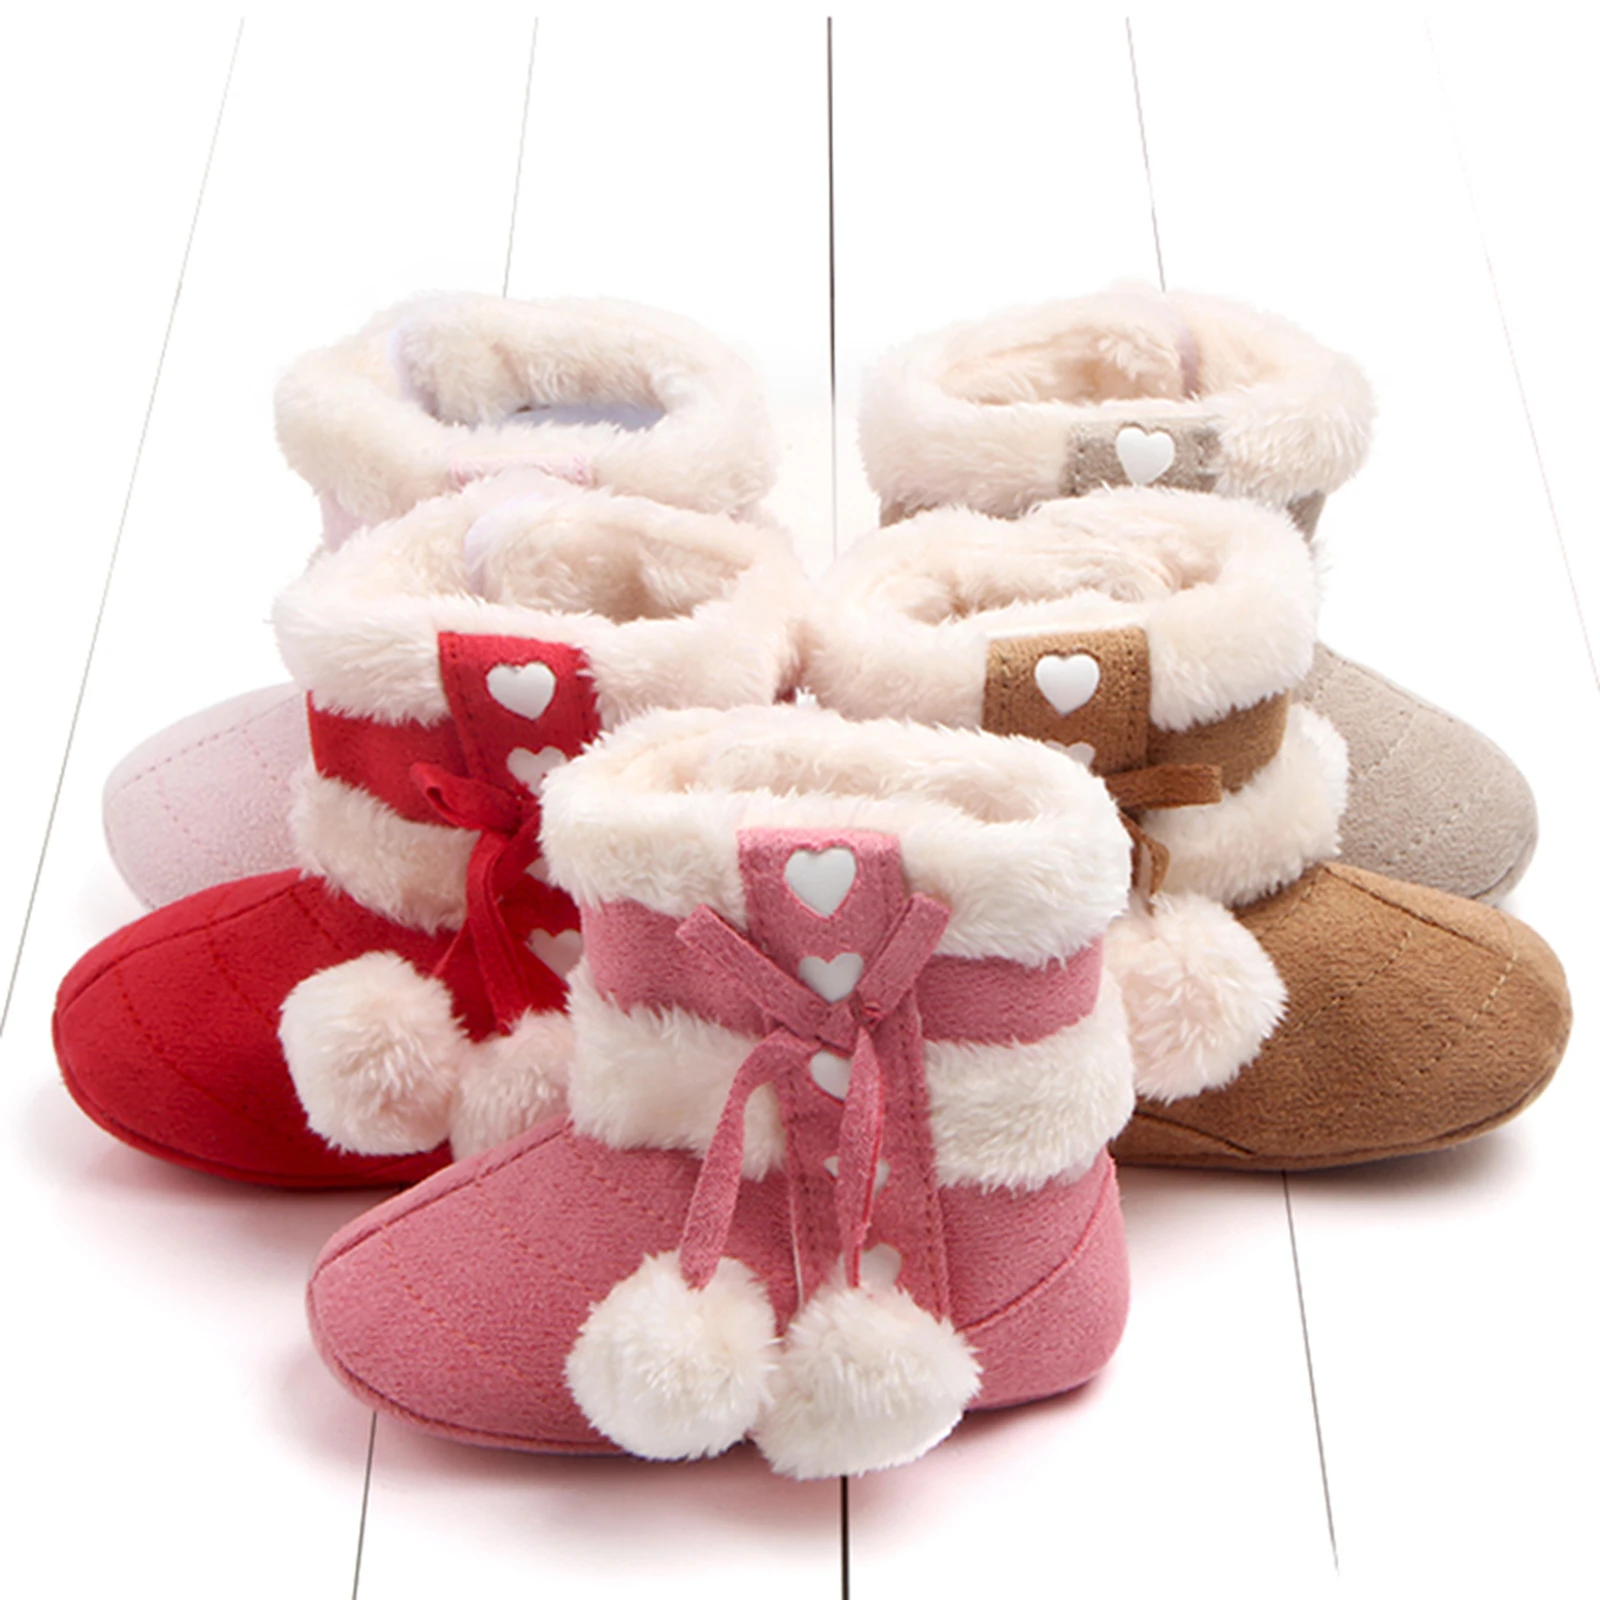 Sepatu bot bayi perempuan baru lahir, sepatu bot musim dingin pita lucu, sepatu salju Pom hangat untuk balita